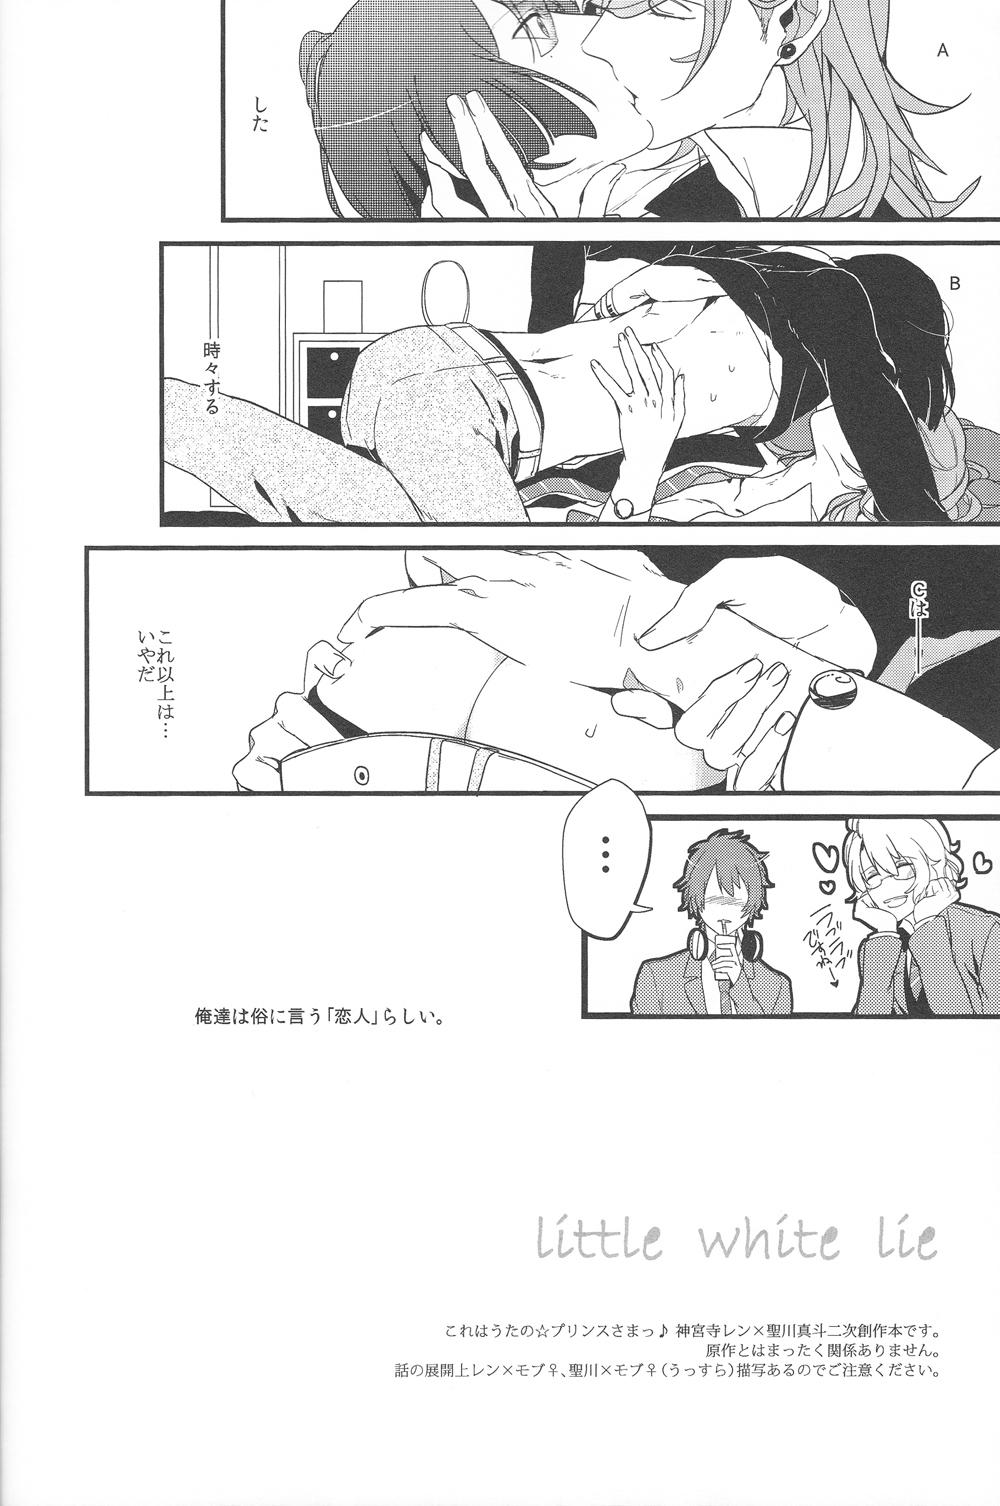 Moaning Little White Lie - Uta no prince-sama Gay Largedick - Page 3